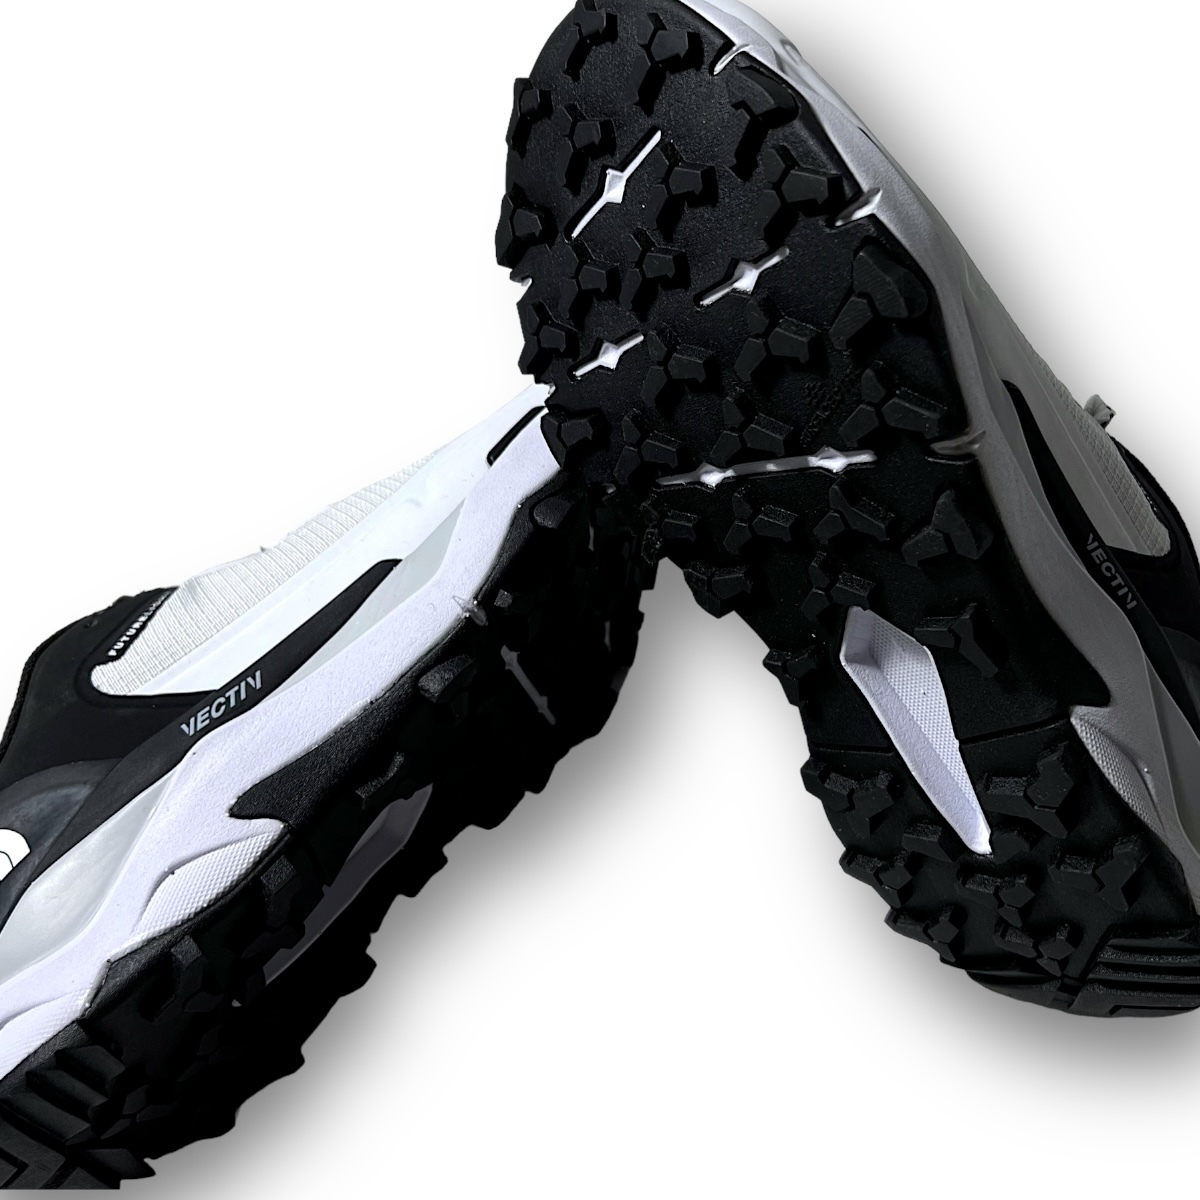  новый товар THE NORTH FACE North Face .2.2 десять тысяч Future свет походная обувь спортивные туфли уличный NFW02131 22.5cm *B3455